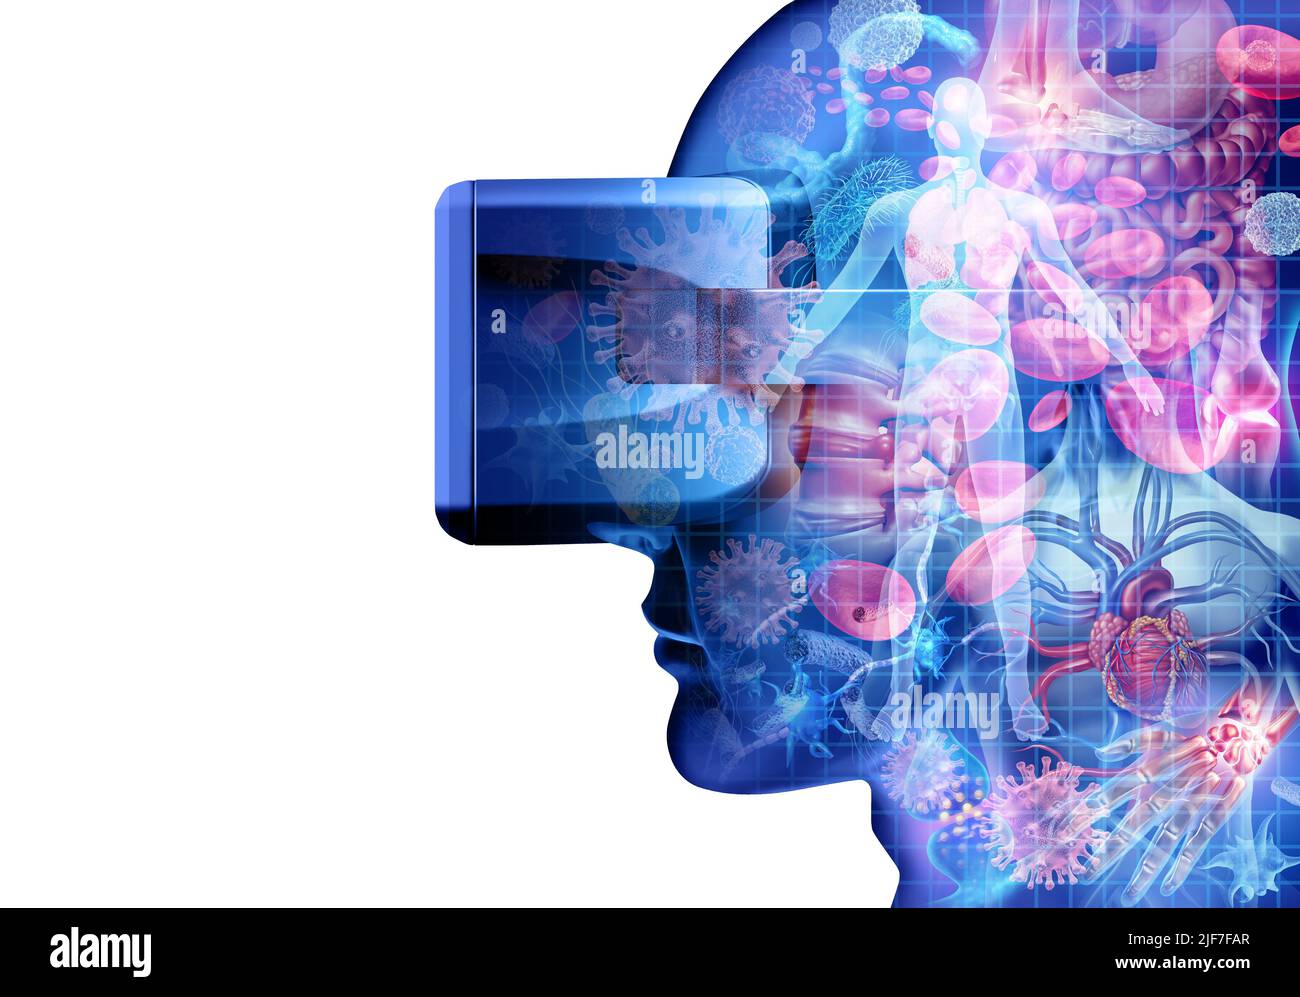 Remote-Medizin und Virtual Reality-Gesundheits- und medizinische Bildungstechnologie als menschlicher Körper und Krankheit, die durch ein VR-Headset als Gesundheit angesehen wird. Stockfoto